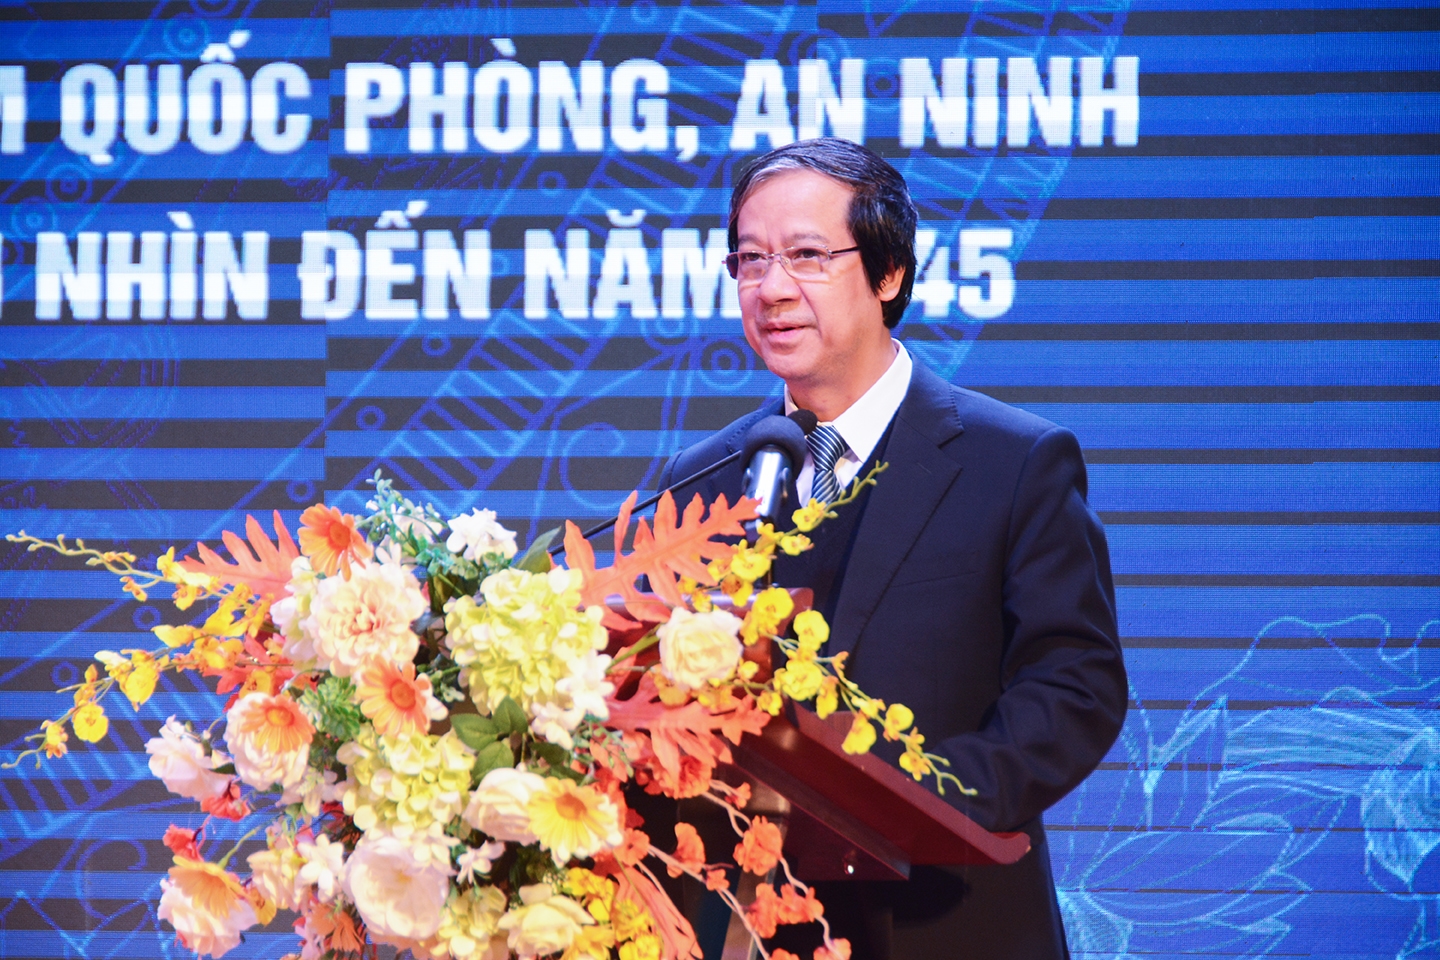  Bộ trưởng Bộ GD&ĐT Nguyễn Kim Sơn phát biểu khai mạc Hội nghị